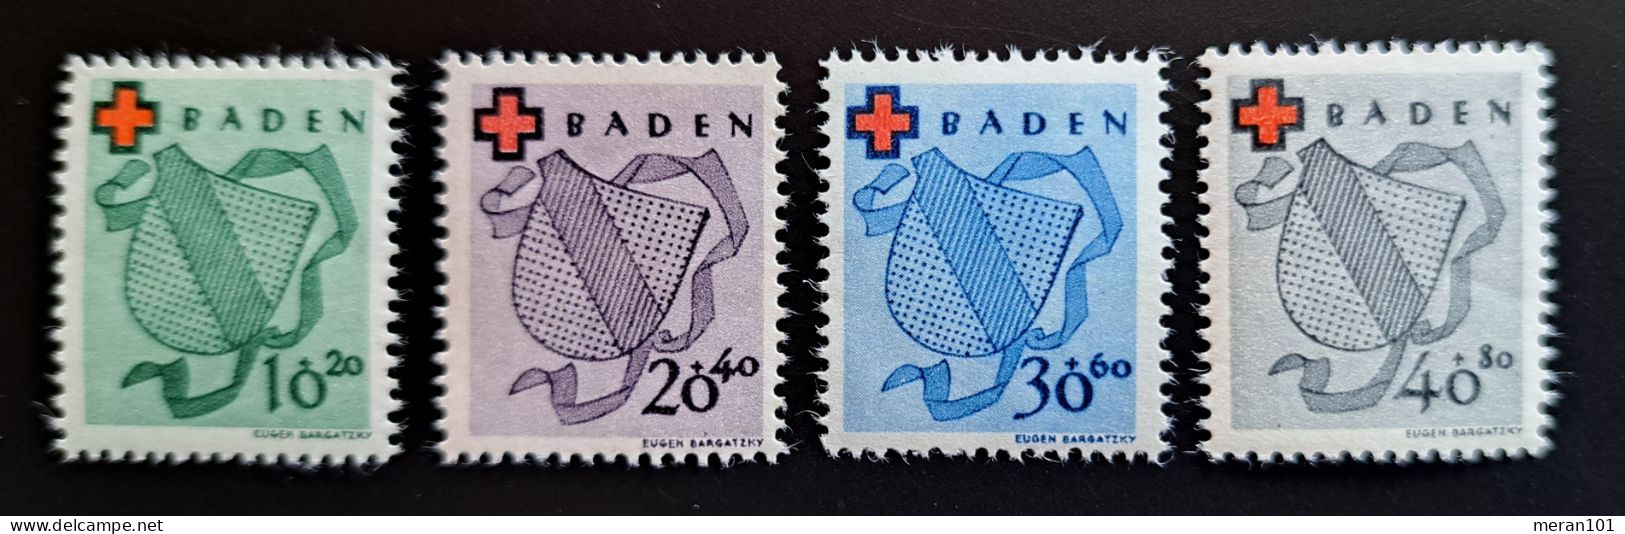 Baden Mi 42A-45A MNH(postfrisch) - Bade